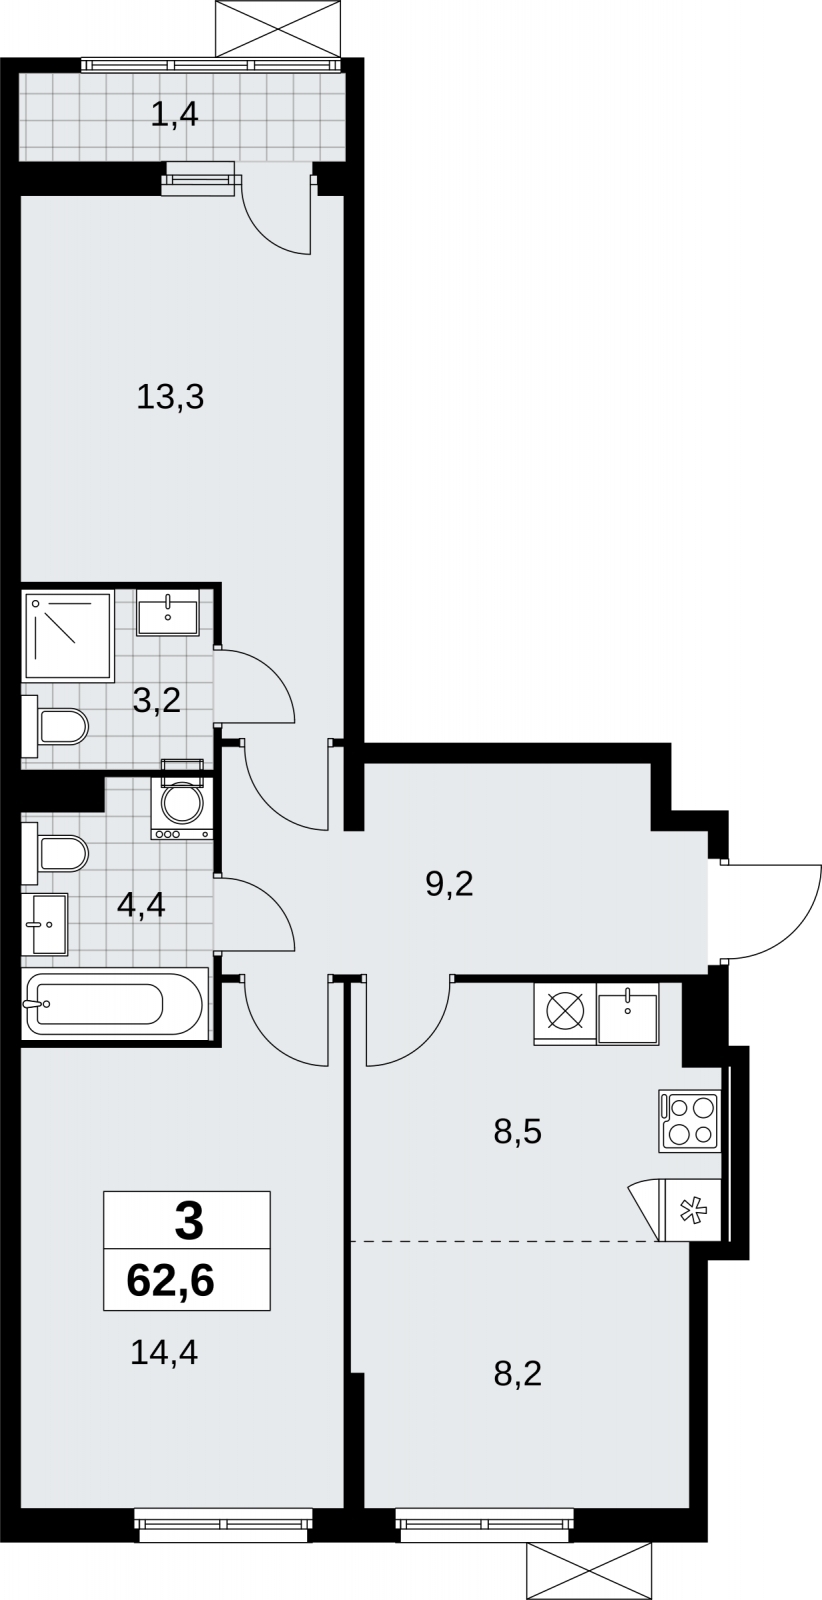 Продается трехкомнатная квартира с отделкой в новом ЖК, у метро